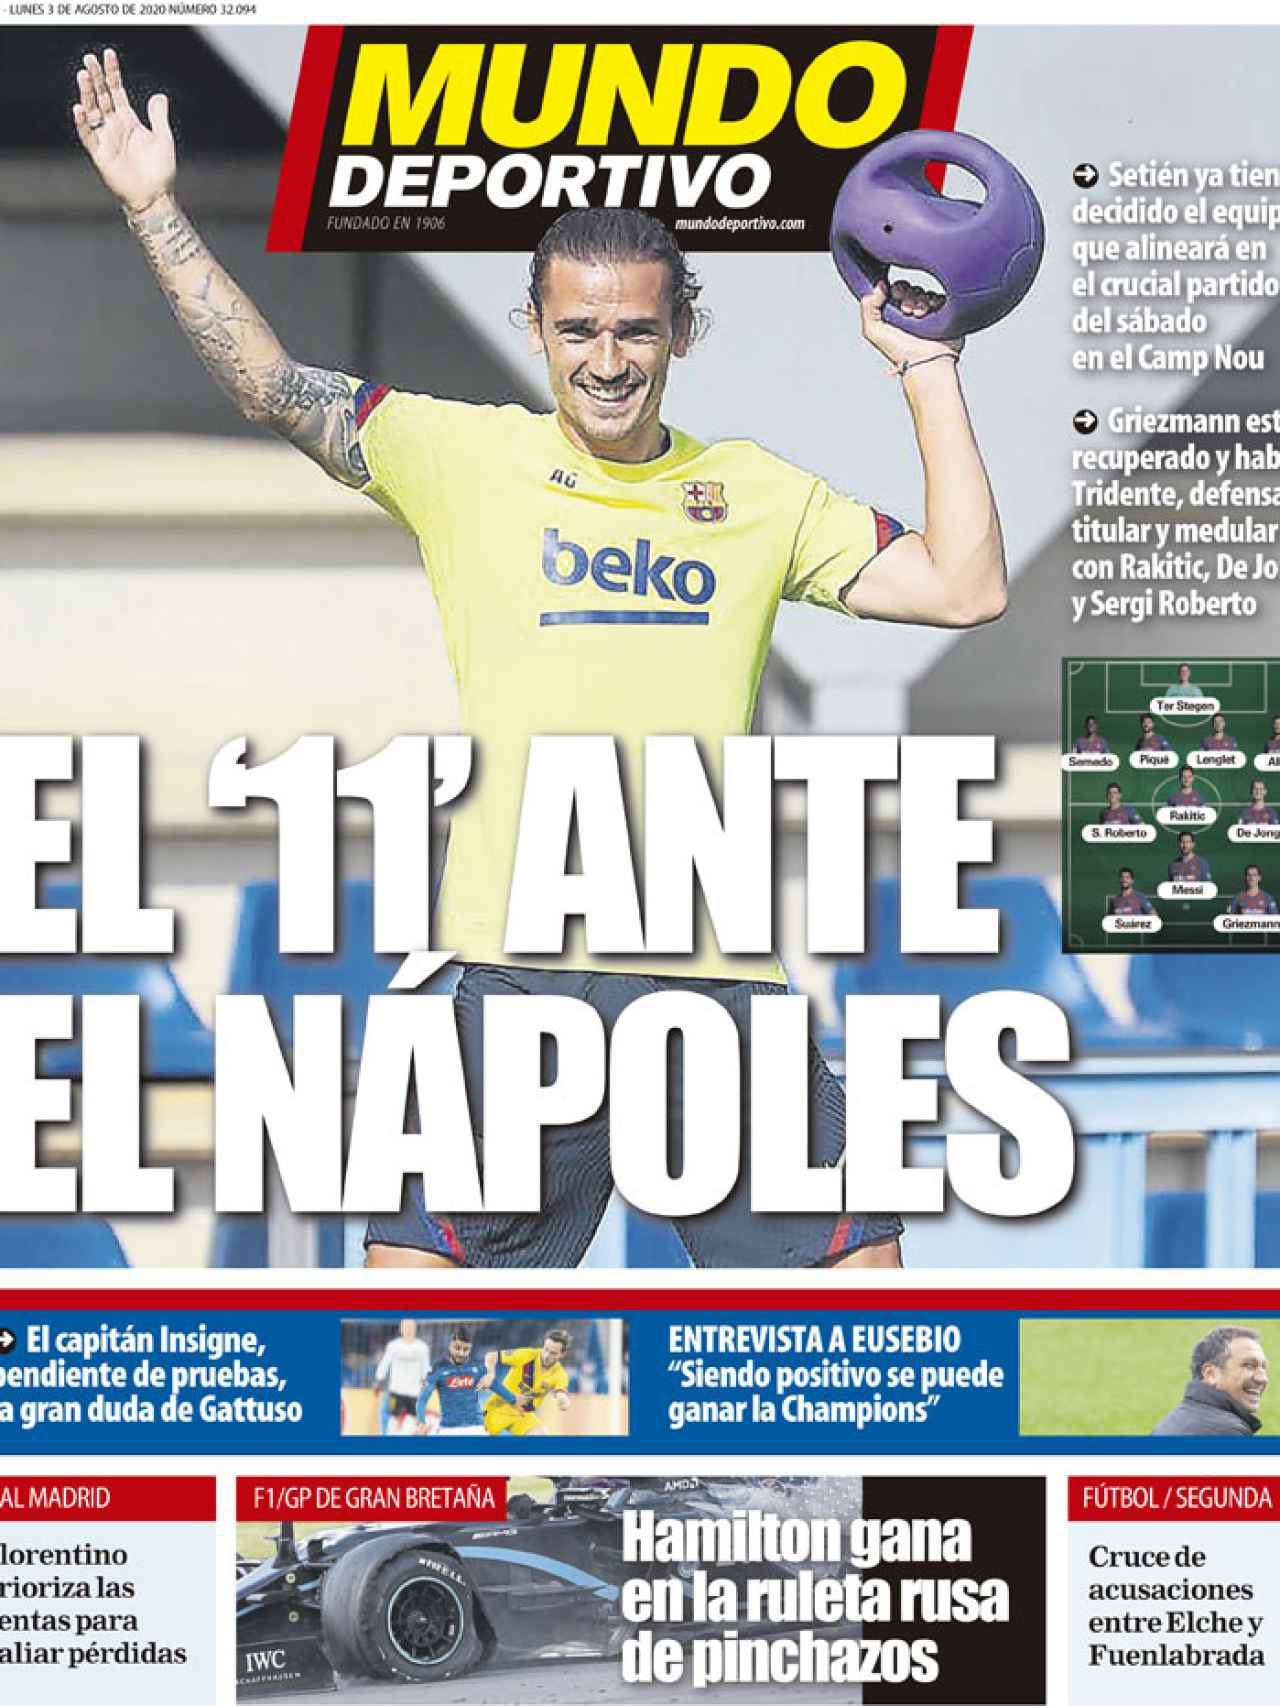 La portada del diario Mundo Deportivo (03/08/2020)